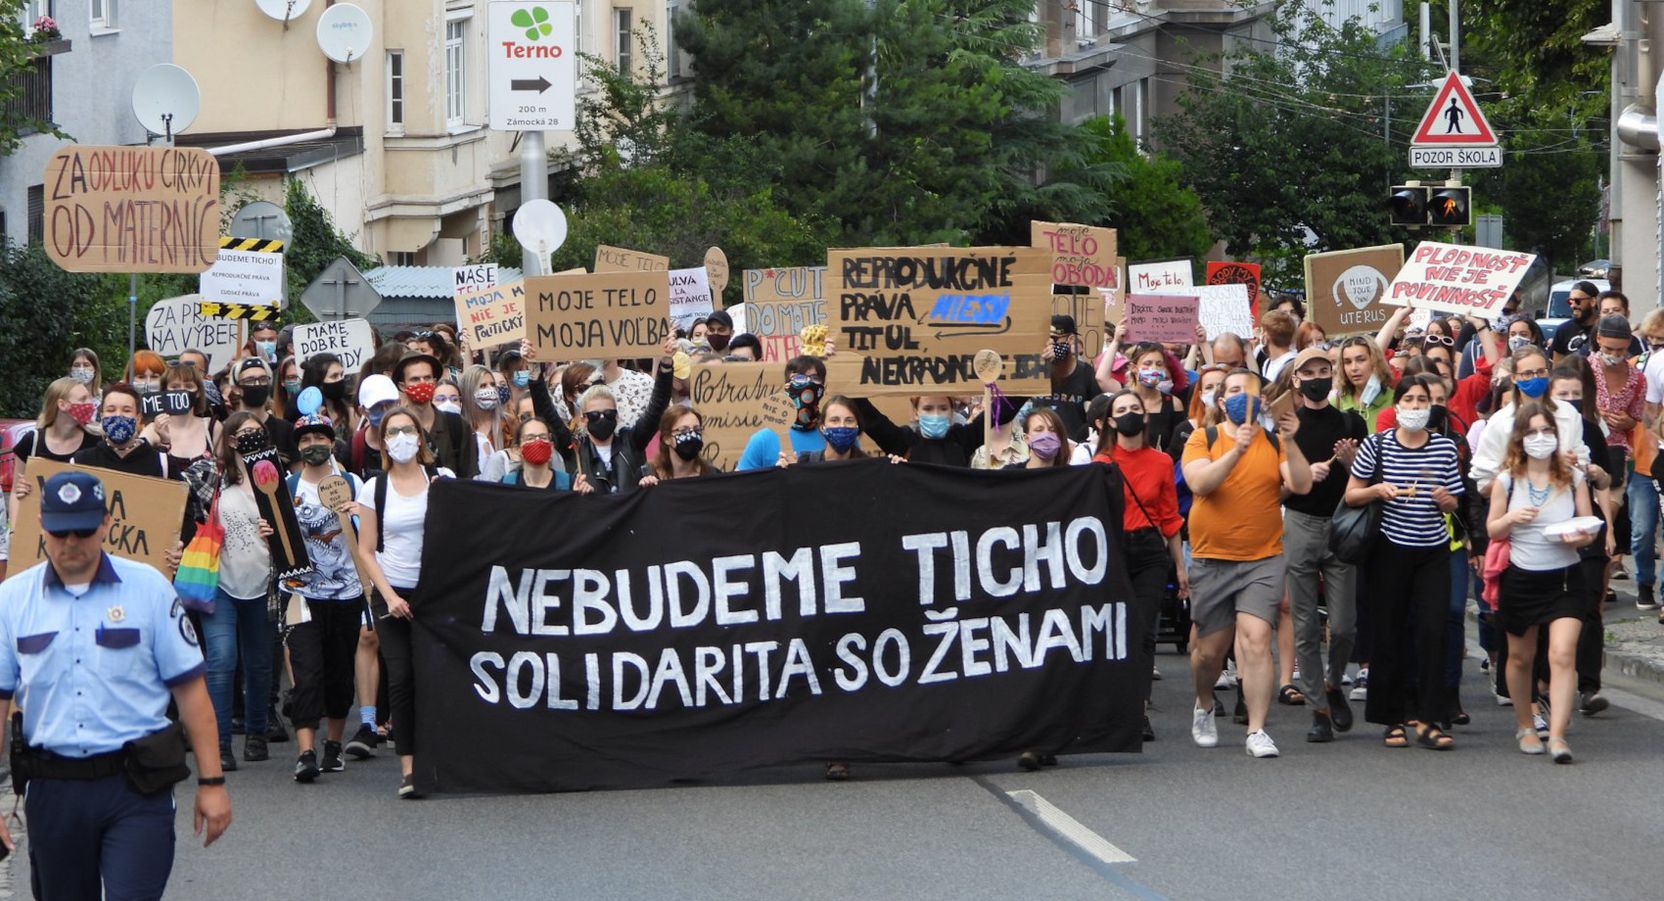 Die Demonstrierenden auf der Straße, das schwarze Banner mit der Aufschrift »Nebudeme Ticho!« – »Wir werden nicht schweigen!« wird ganz vorne getragen.